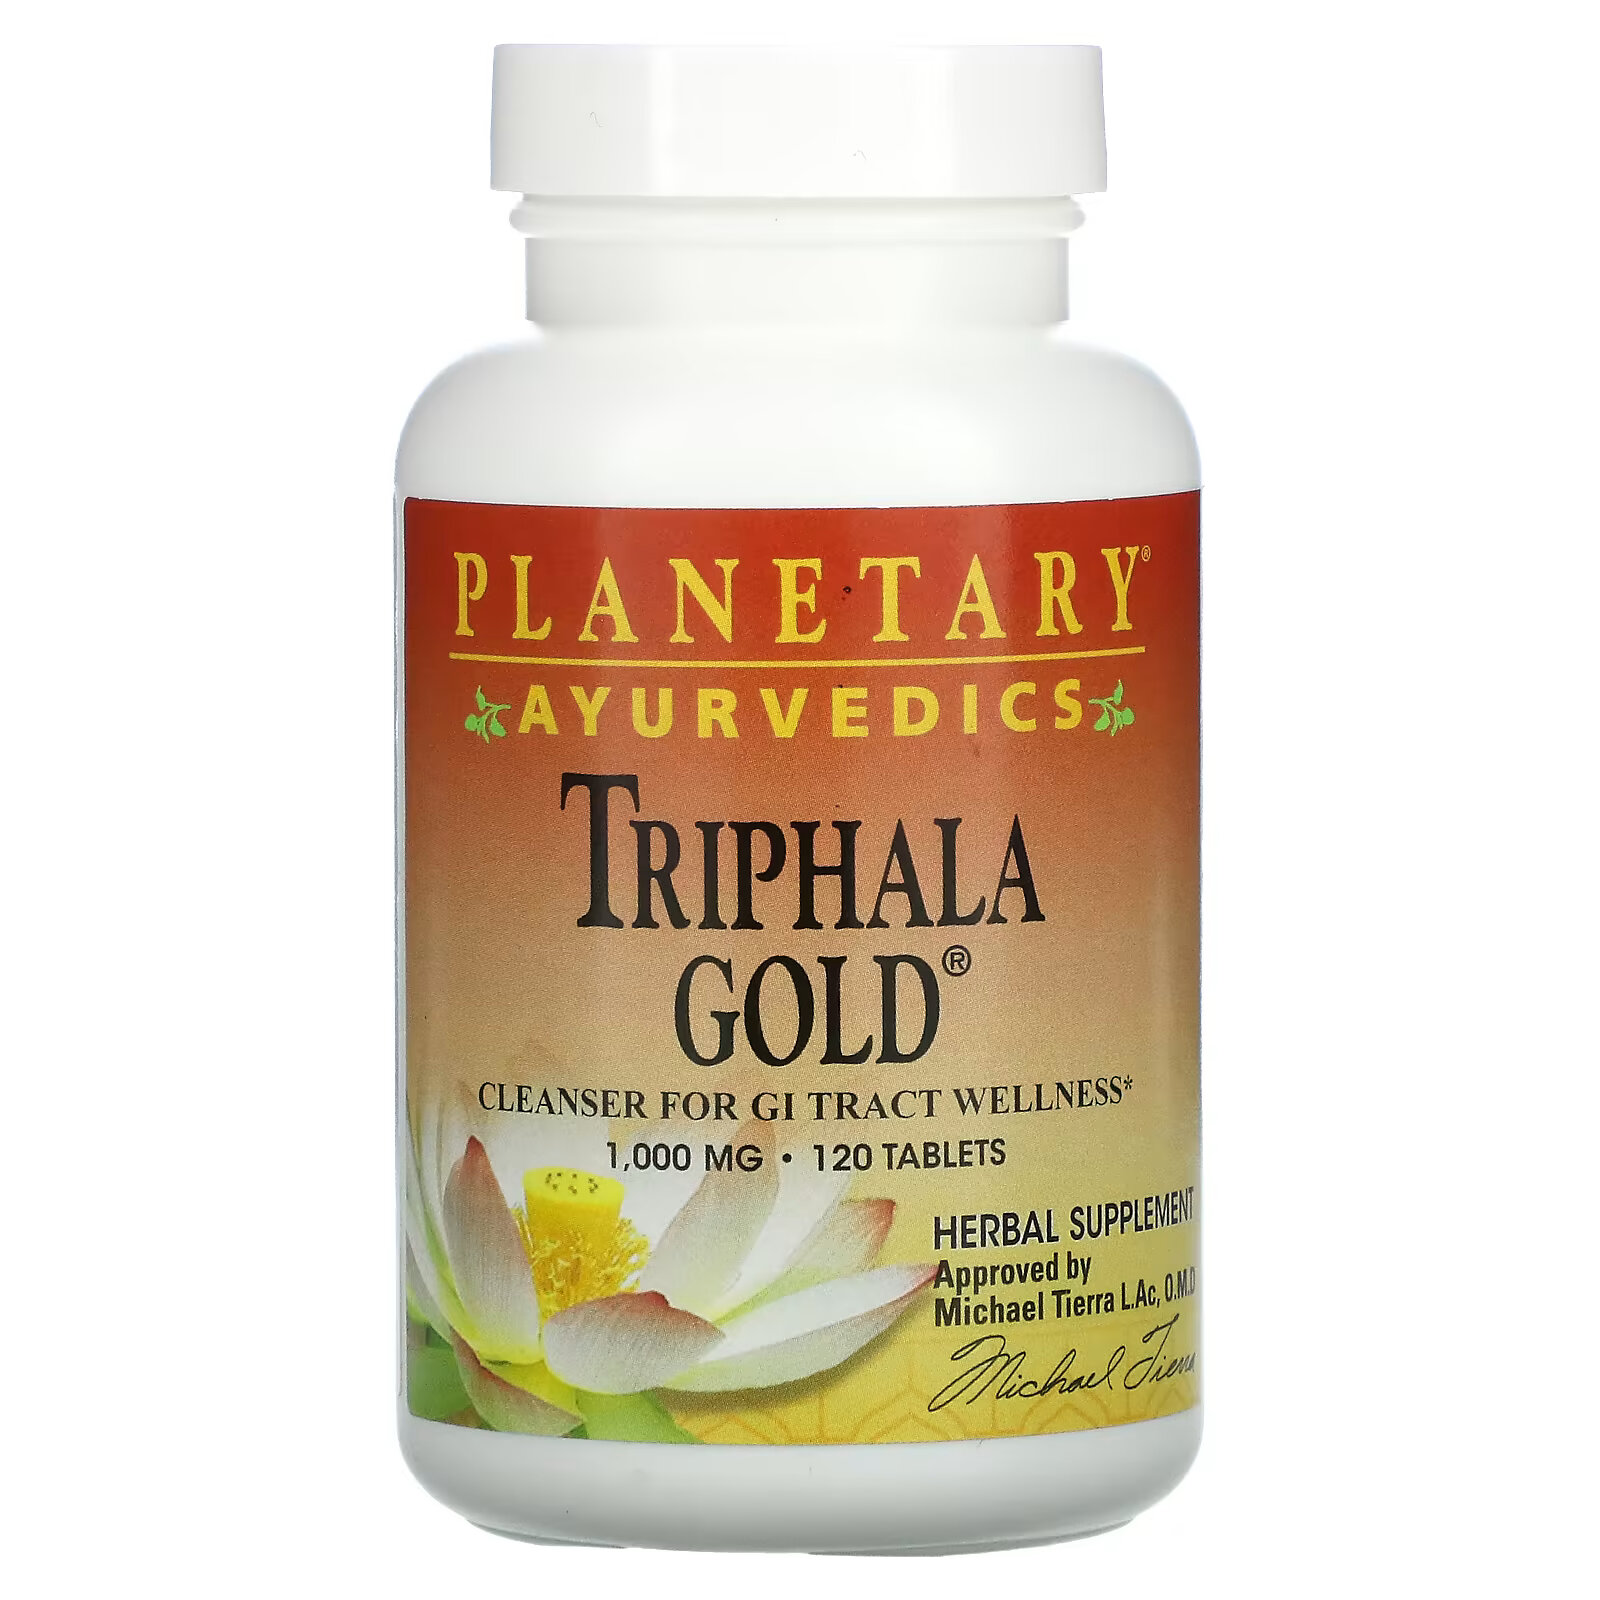 planetary herbals triphala здоровье желудочно кишечного тракта 1000 мг 180 таблеток Planetary Herbals, Ayurvedics, Triphala Gold, 1000 мг, 120 таблеток